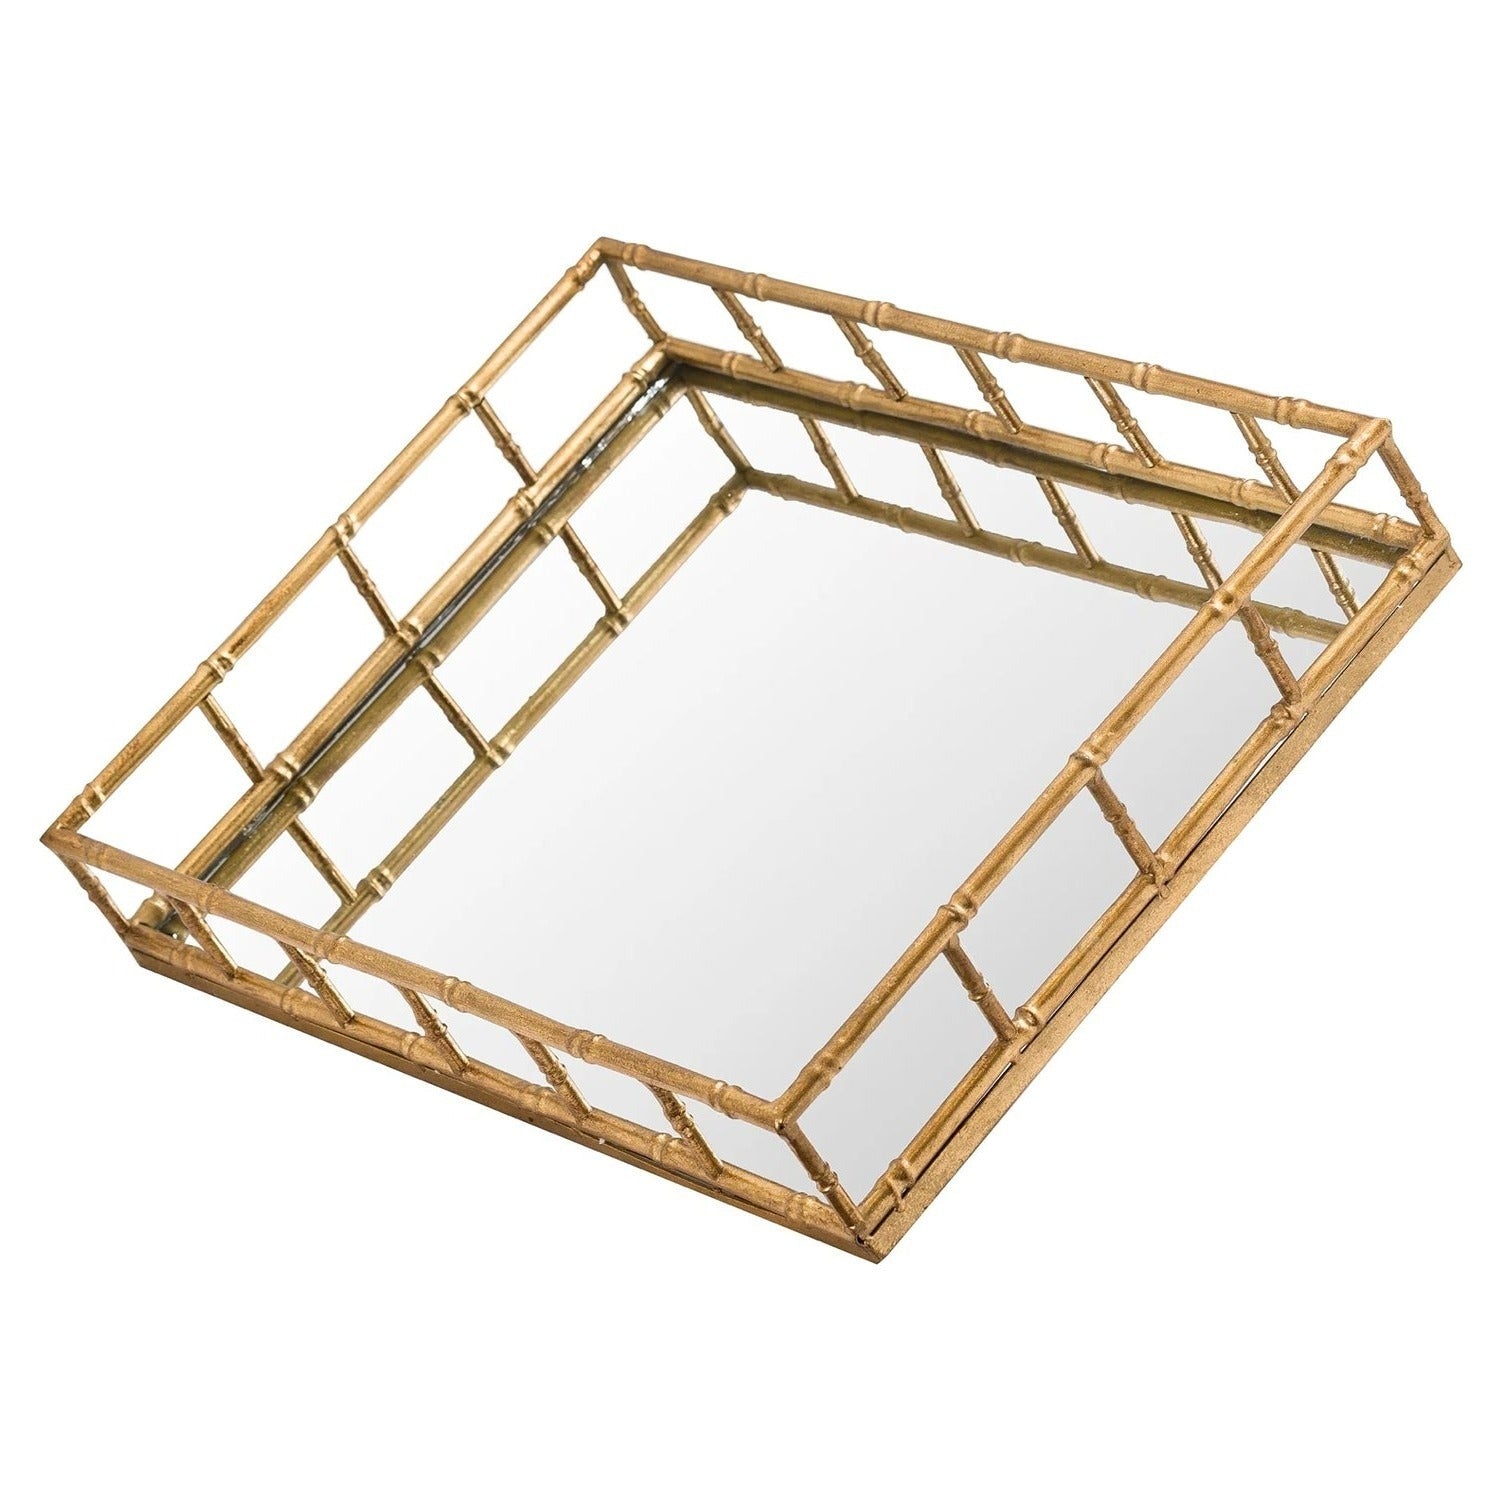 Mirrored glass rectangular tray